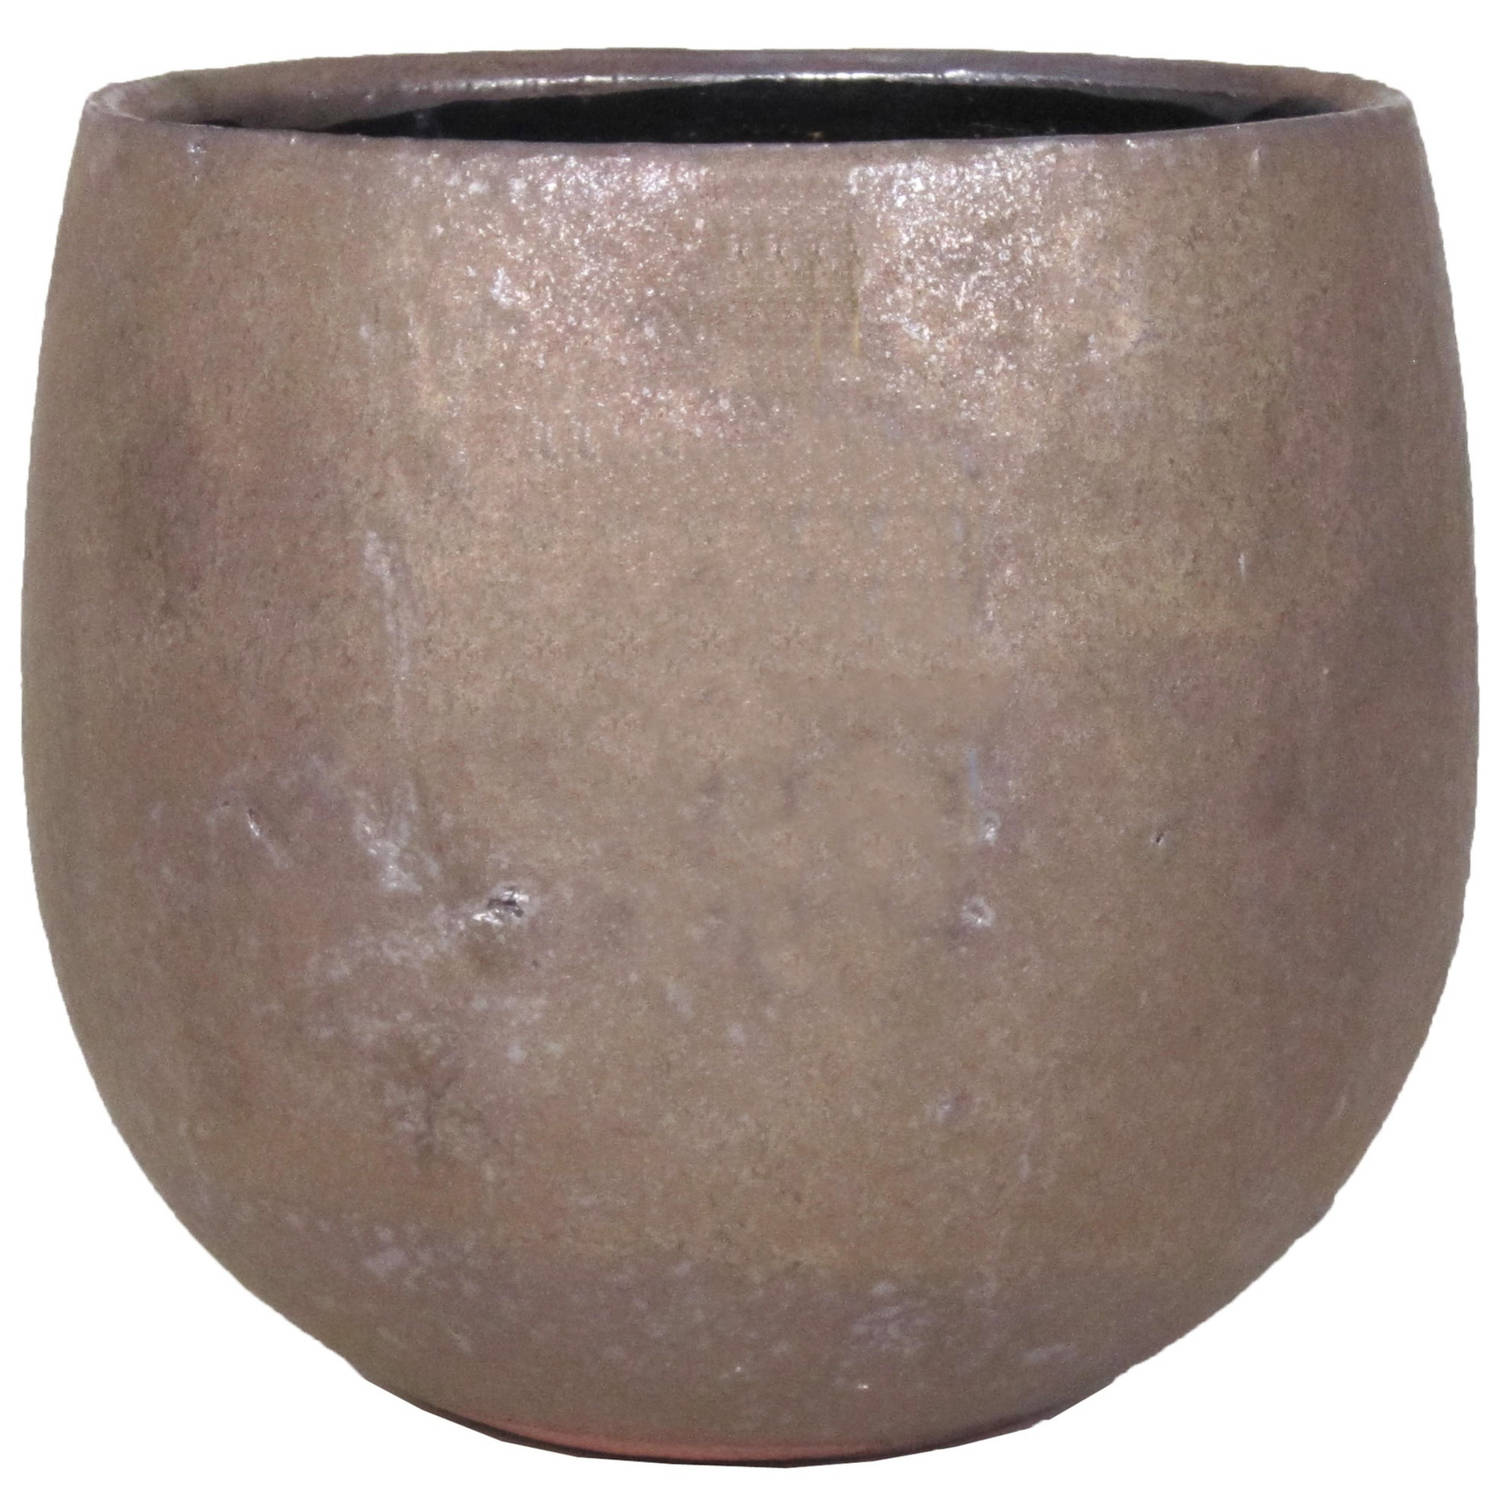 Bloempot/plantenpot schaal van keramiek glanzend brons kleur motief D15/13 cm en H12 cm - Plantenpotten